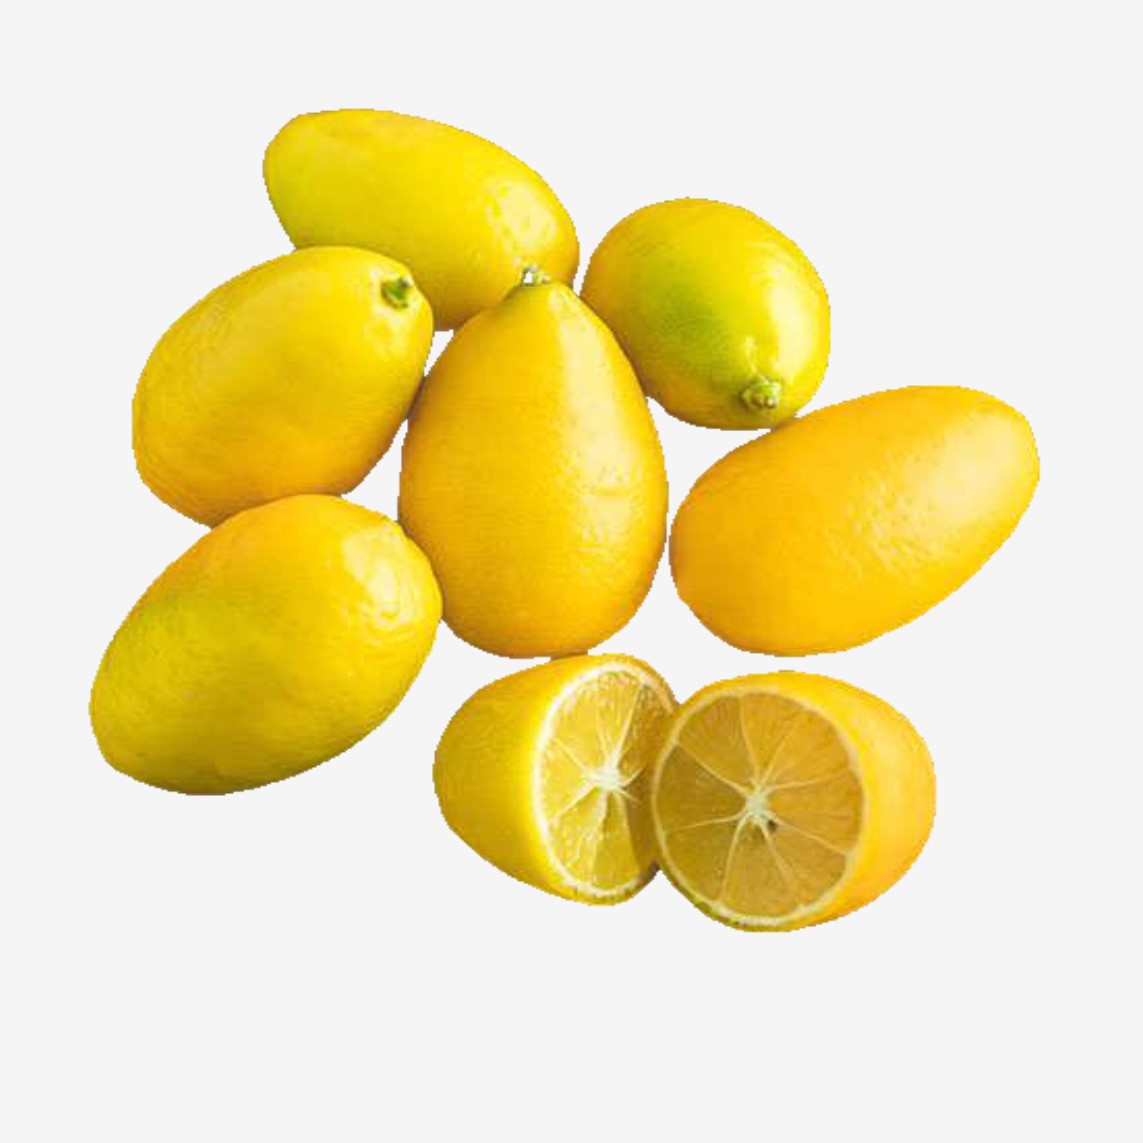 لیمو ترش کوات وب سایت گل میوه